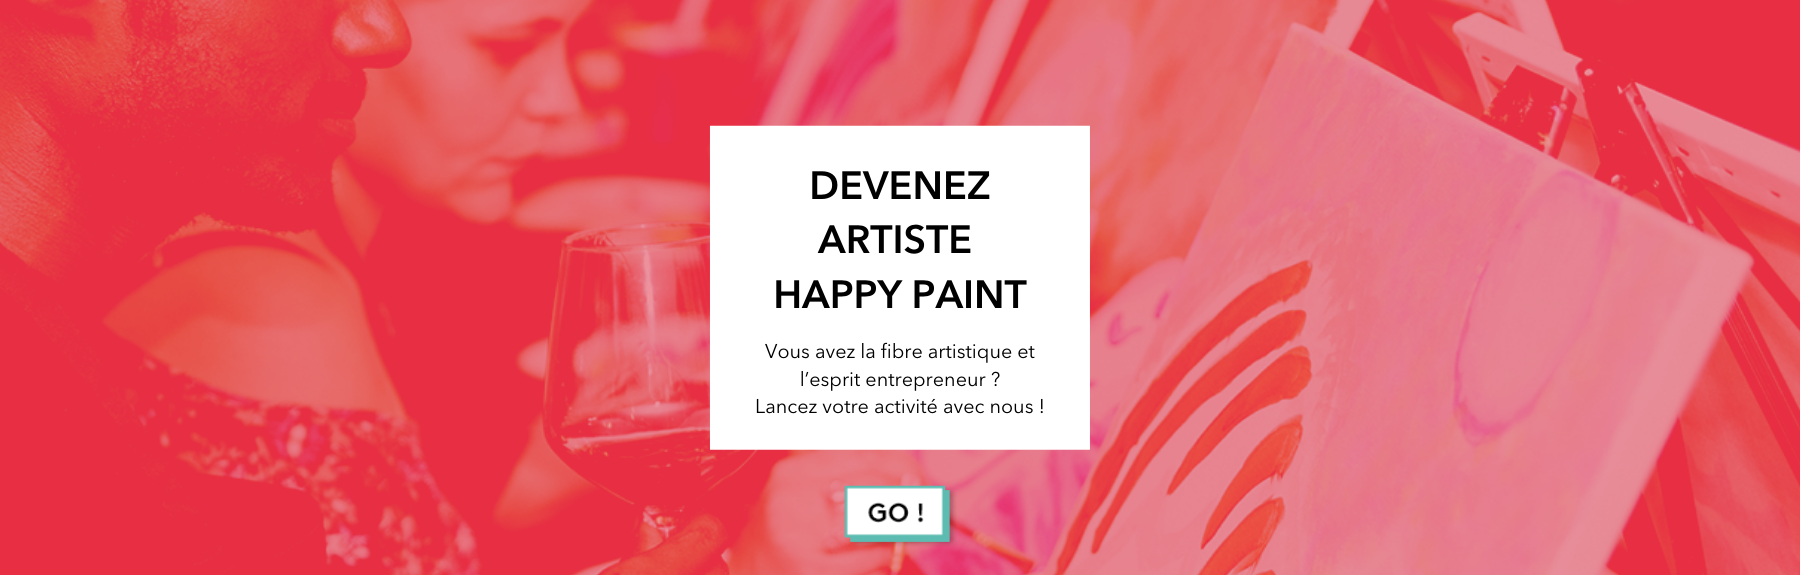 Devenir artiste Happy Paint pour mission artiste freelance cours peinture dans un bar